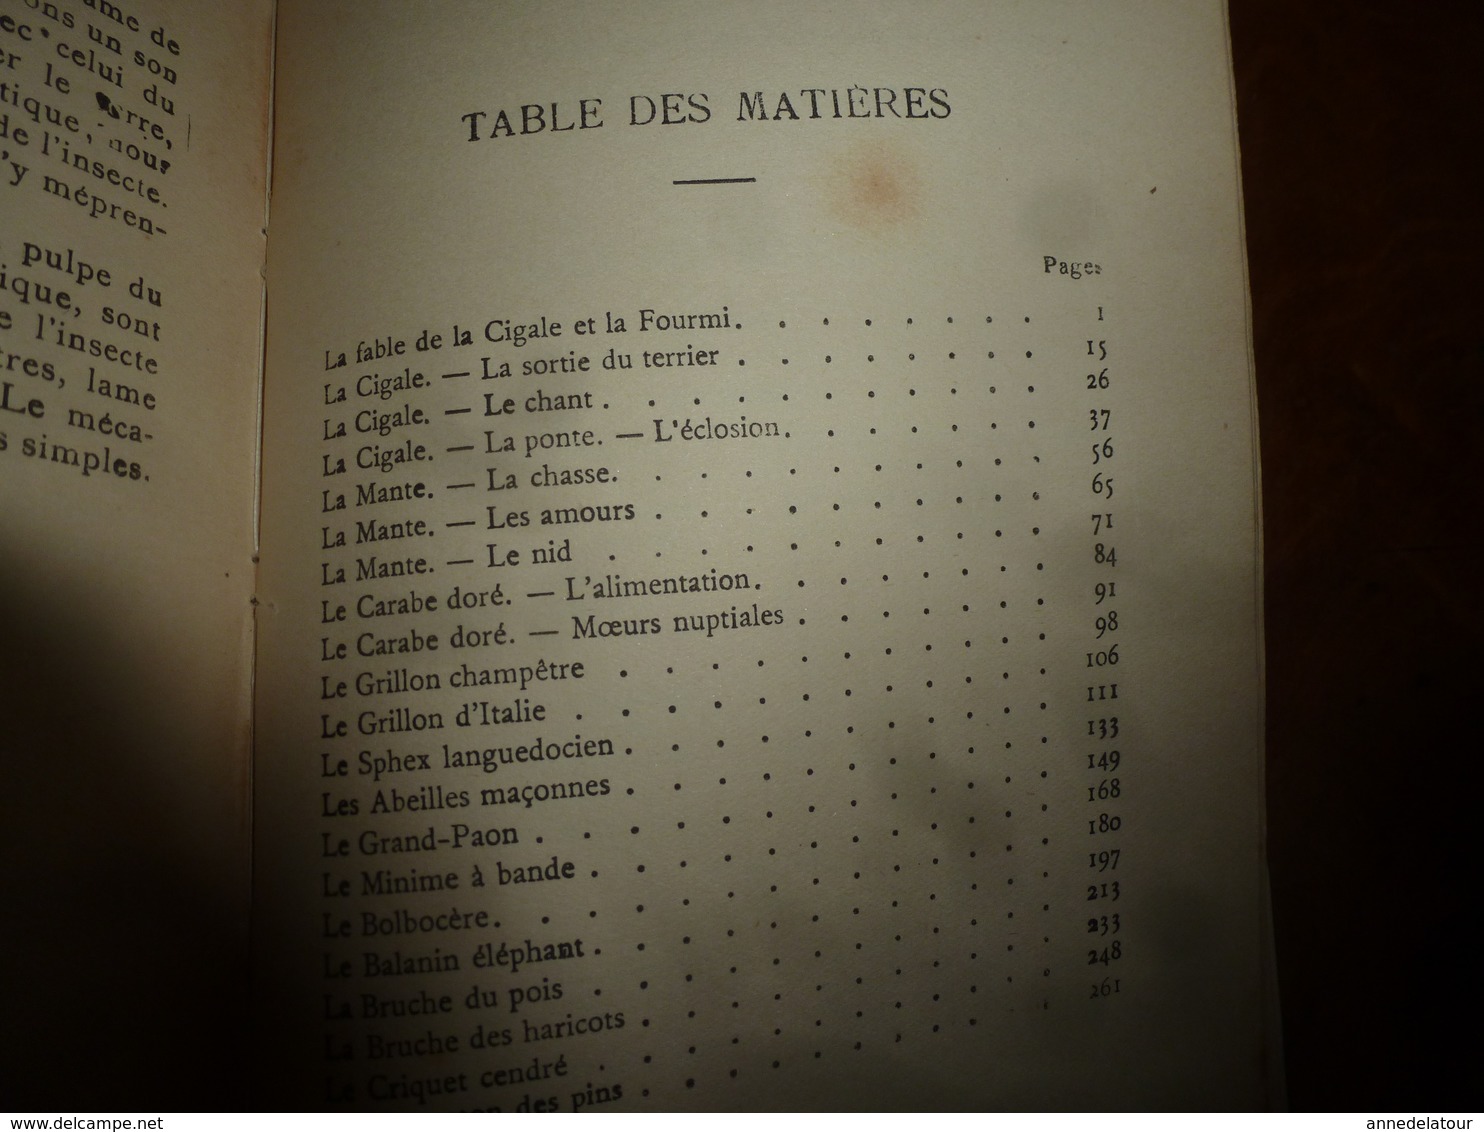 Entomologie par J. H. FABRE - Mœurs des insectes - avec 16 planches hors-texte